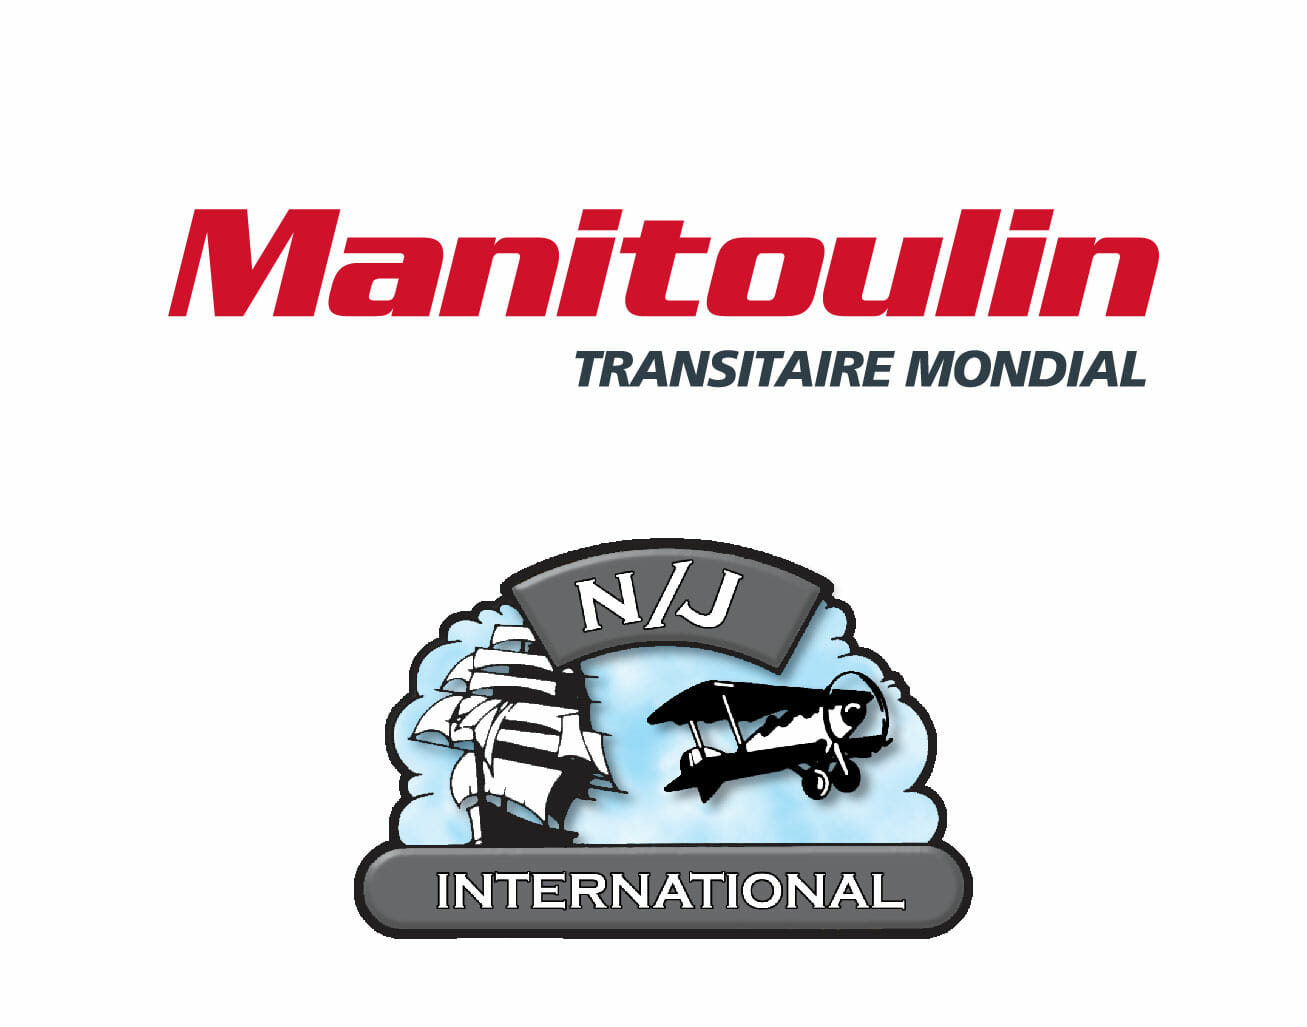 Manitoulin Transitaire mondial fait l'acquisition de N/J International Inc. de Houston, au Texas Cette première acquisition aux États-Unis étend la portée mondiale de Manitoulin